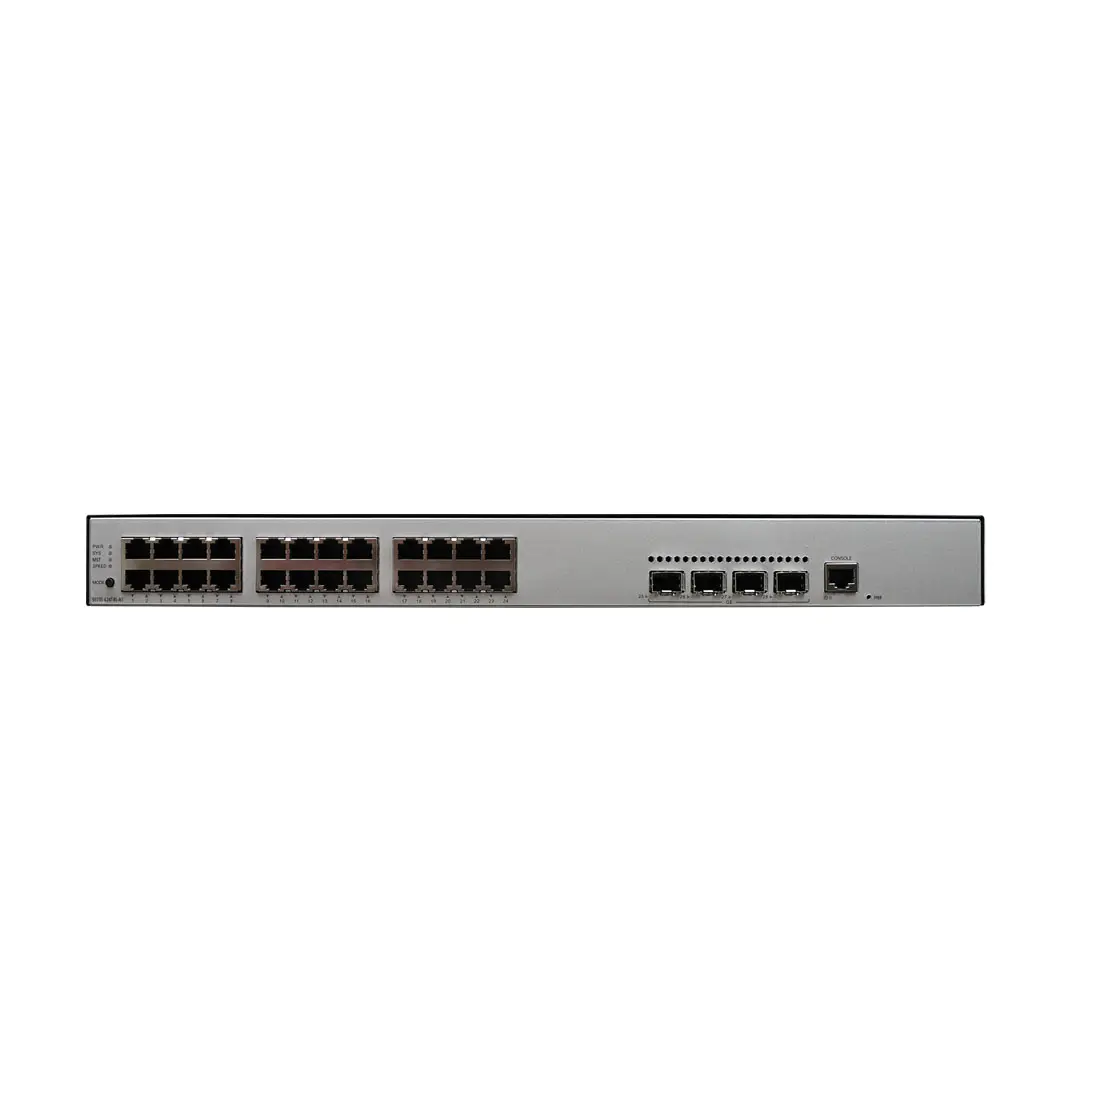 CloudEngine S5735-L24T4S-A1 24-Port Enterprise Campus Network Access Switch